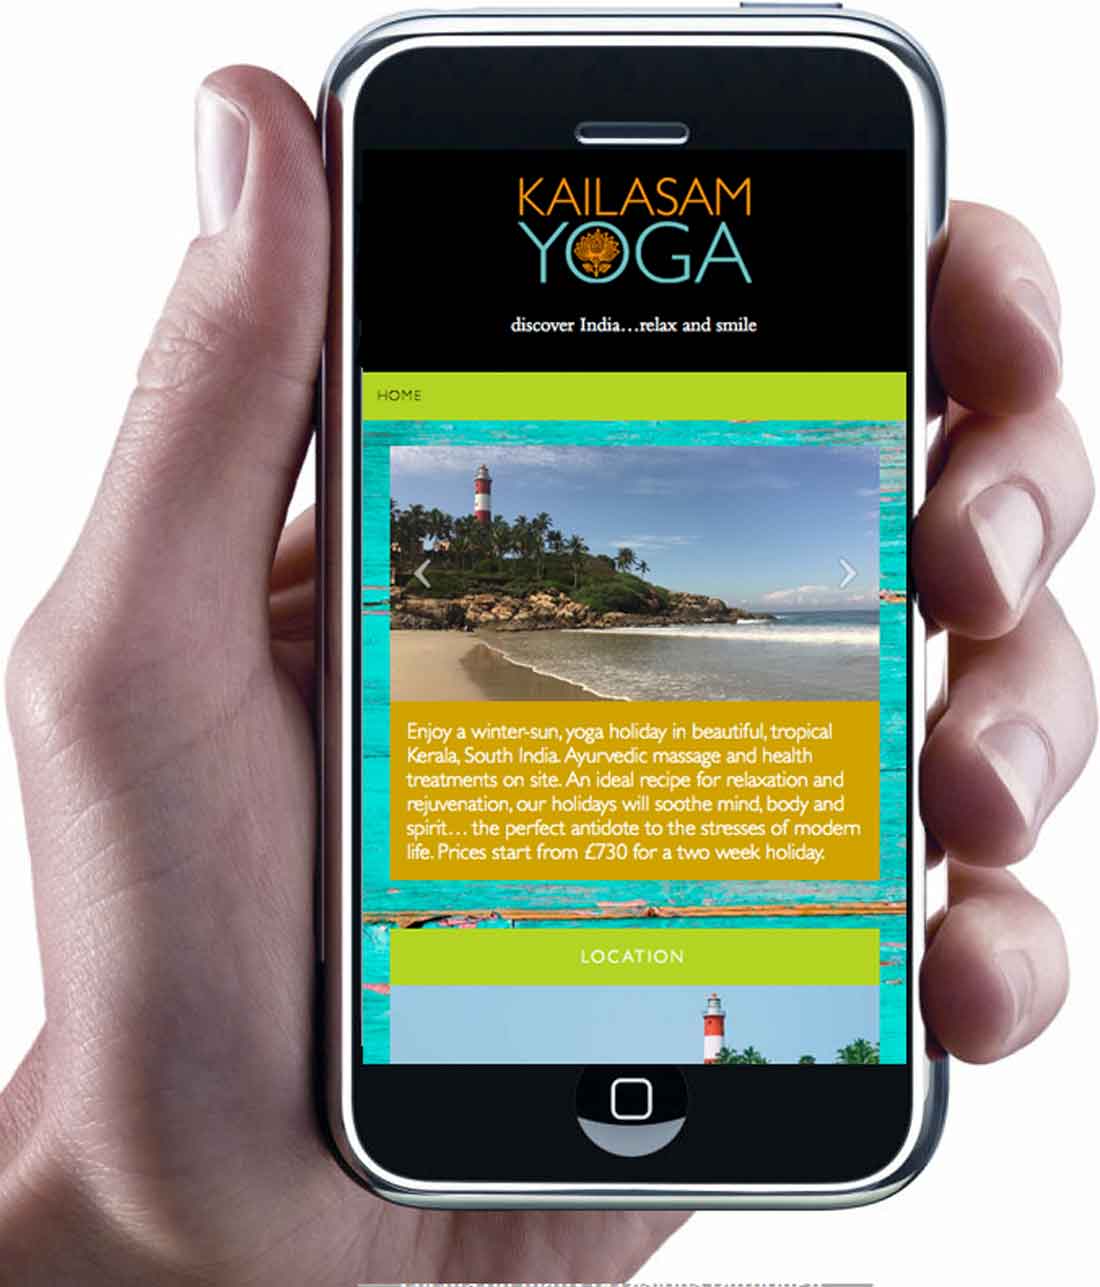 Kailasam Yoga website on smartphone